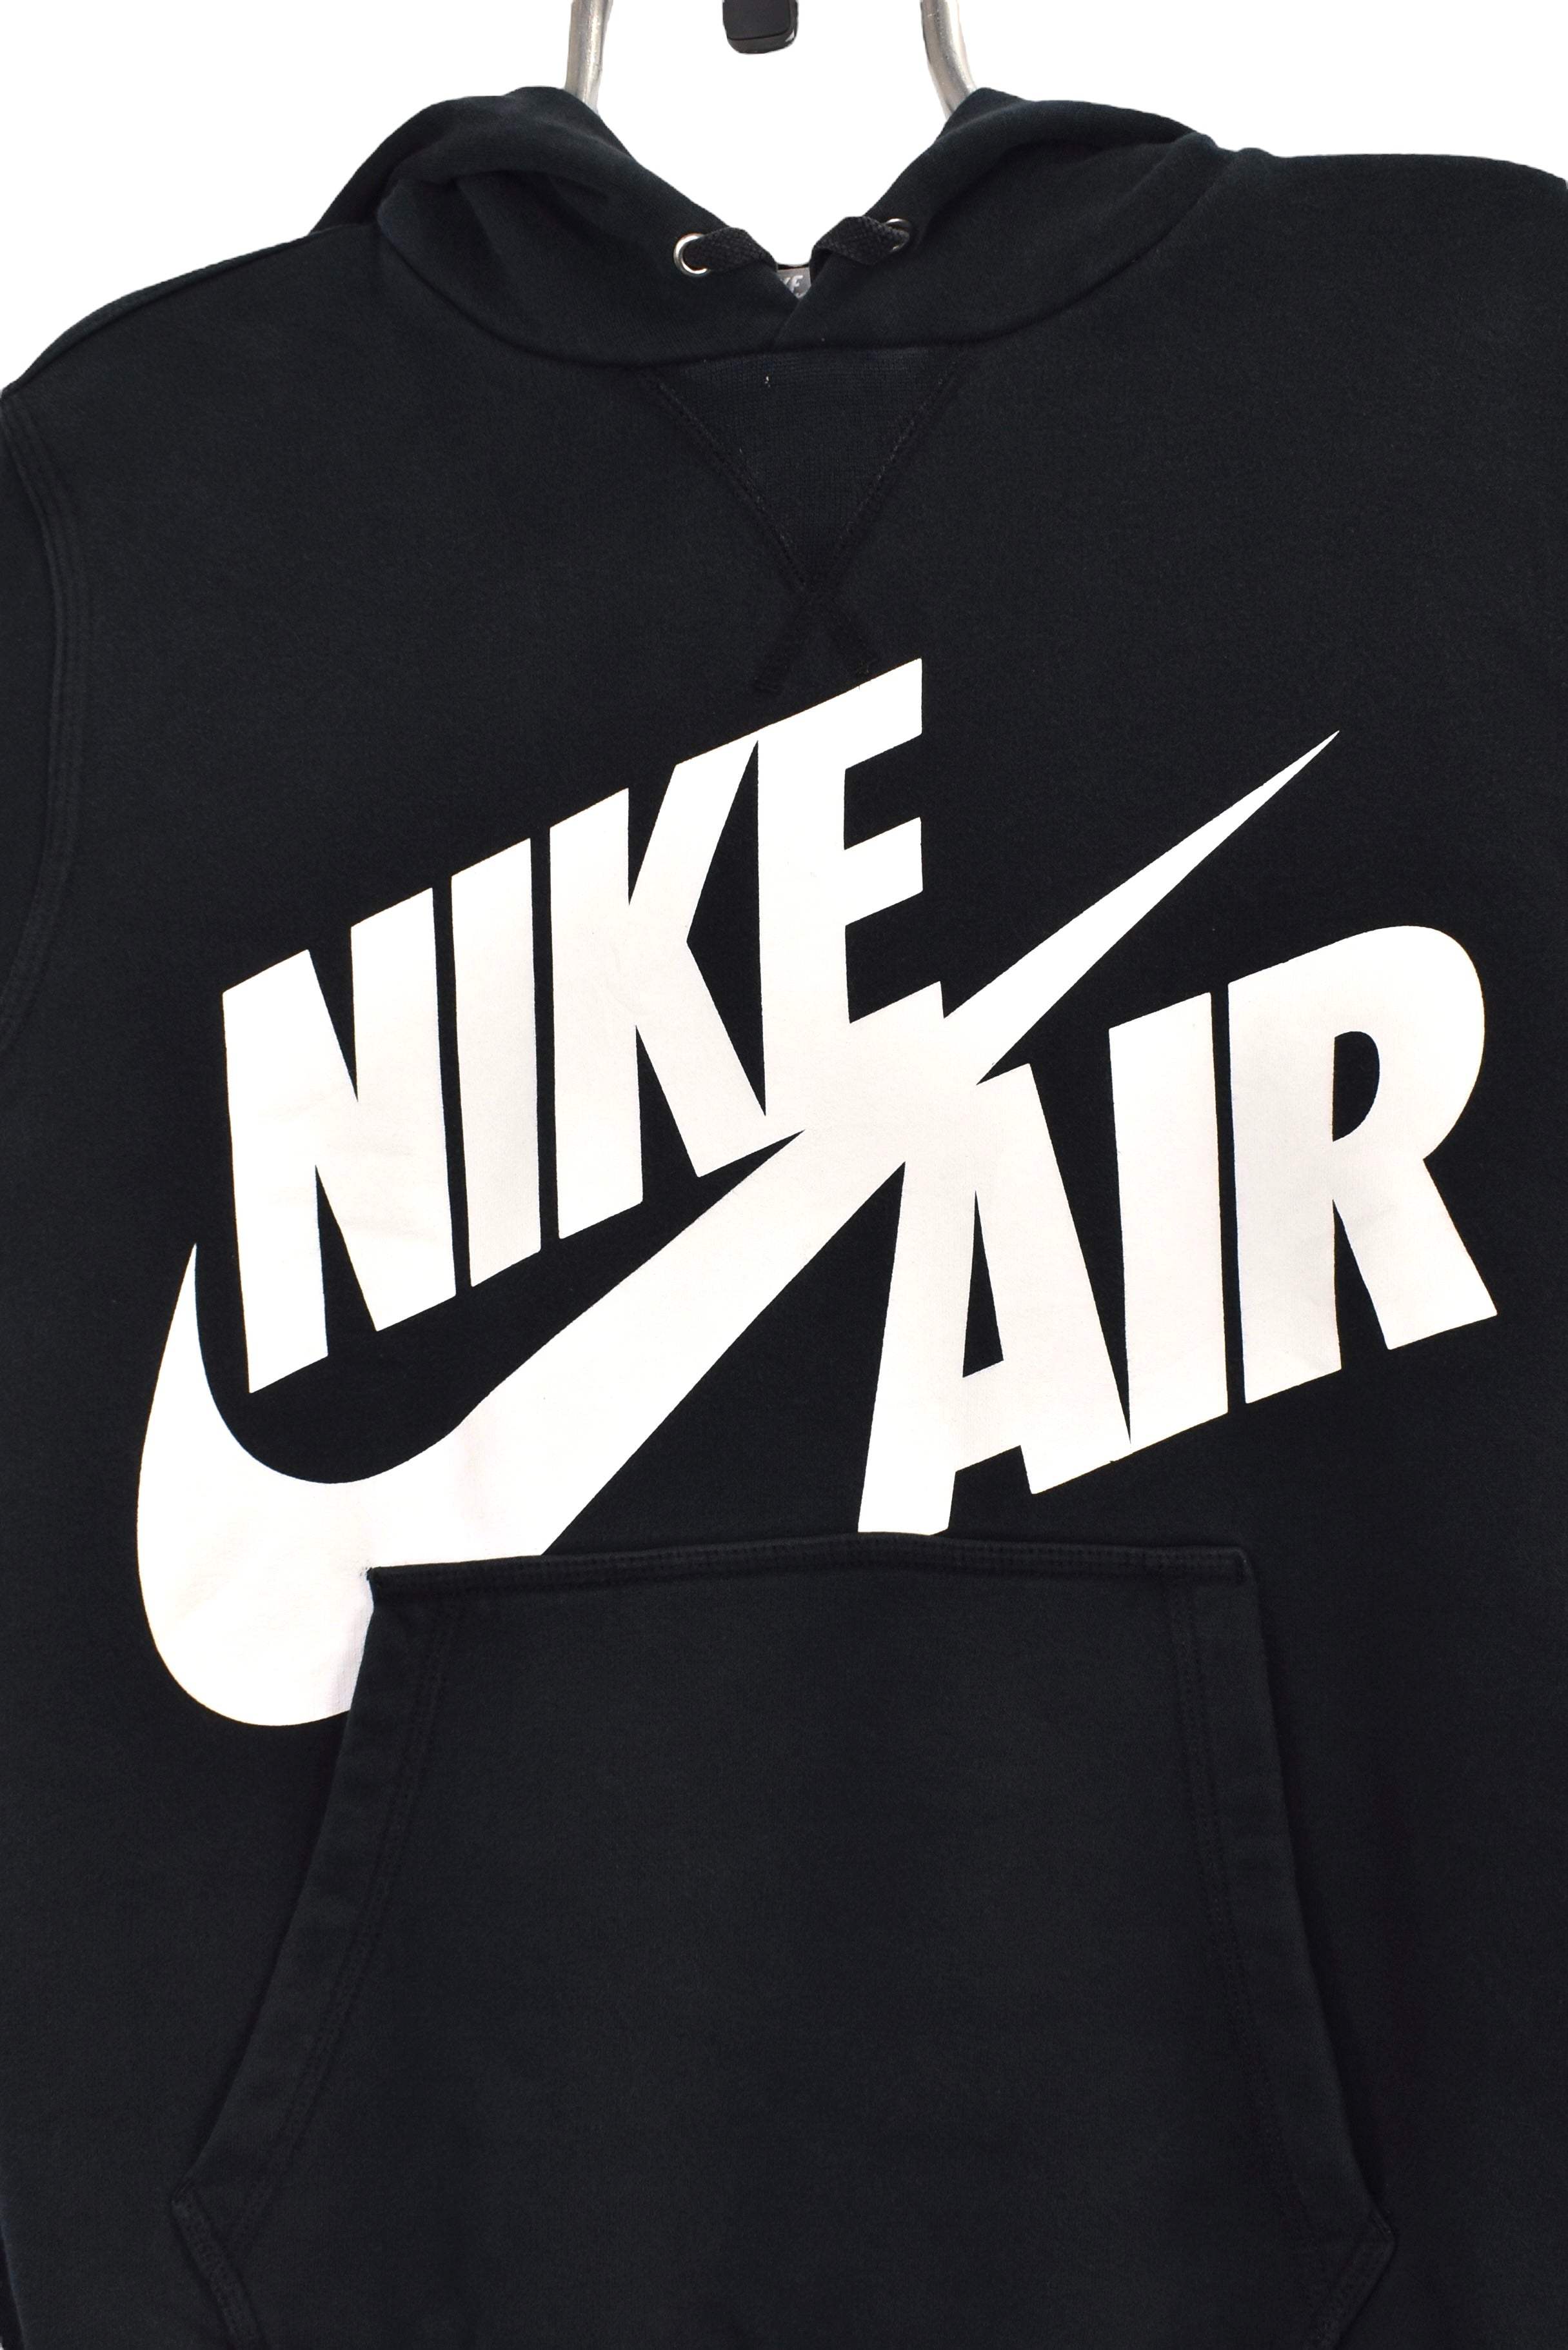 Vintage Nike hoodie (M), black graphic sweatshirt